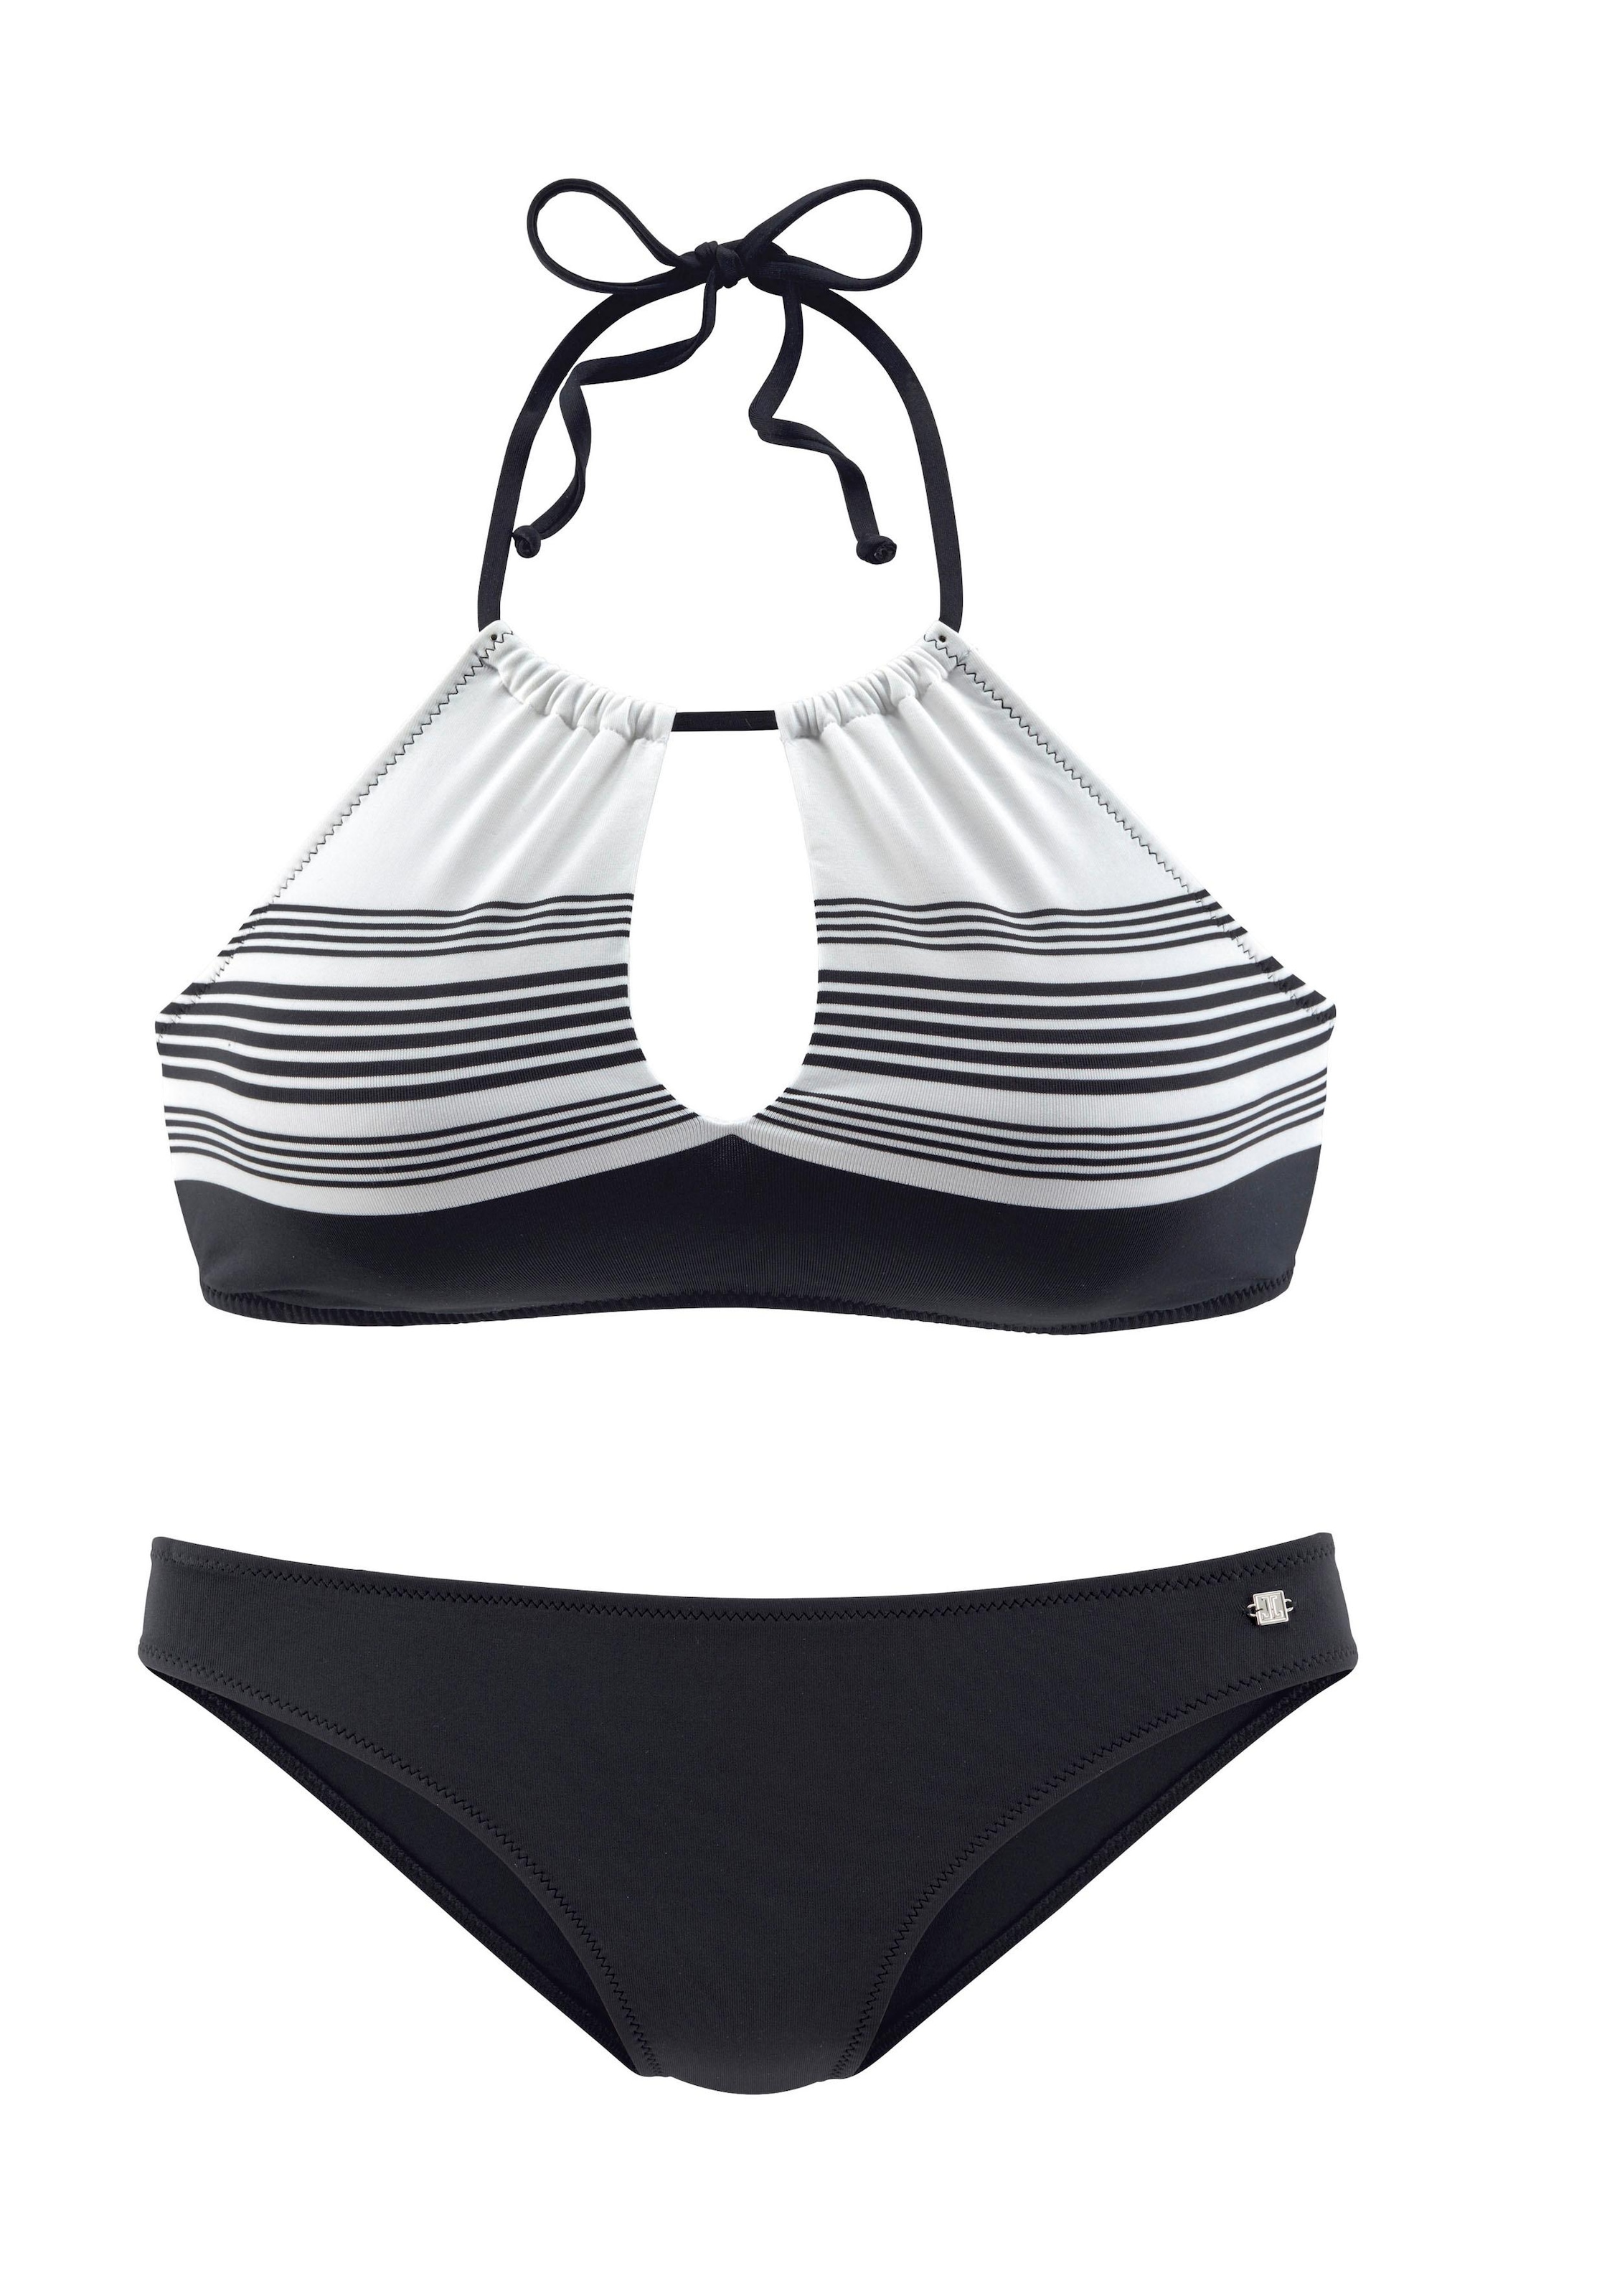 JETTE Bustier-Bikini, mit hochwertigem Design Lingerie & online Unterwäsche | kaufen Bademode, » LASCANA